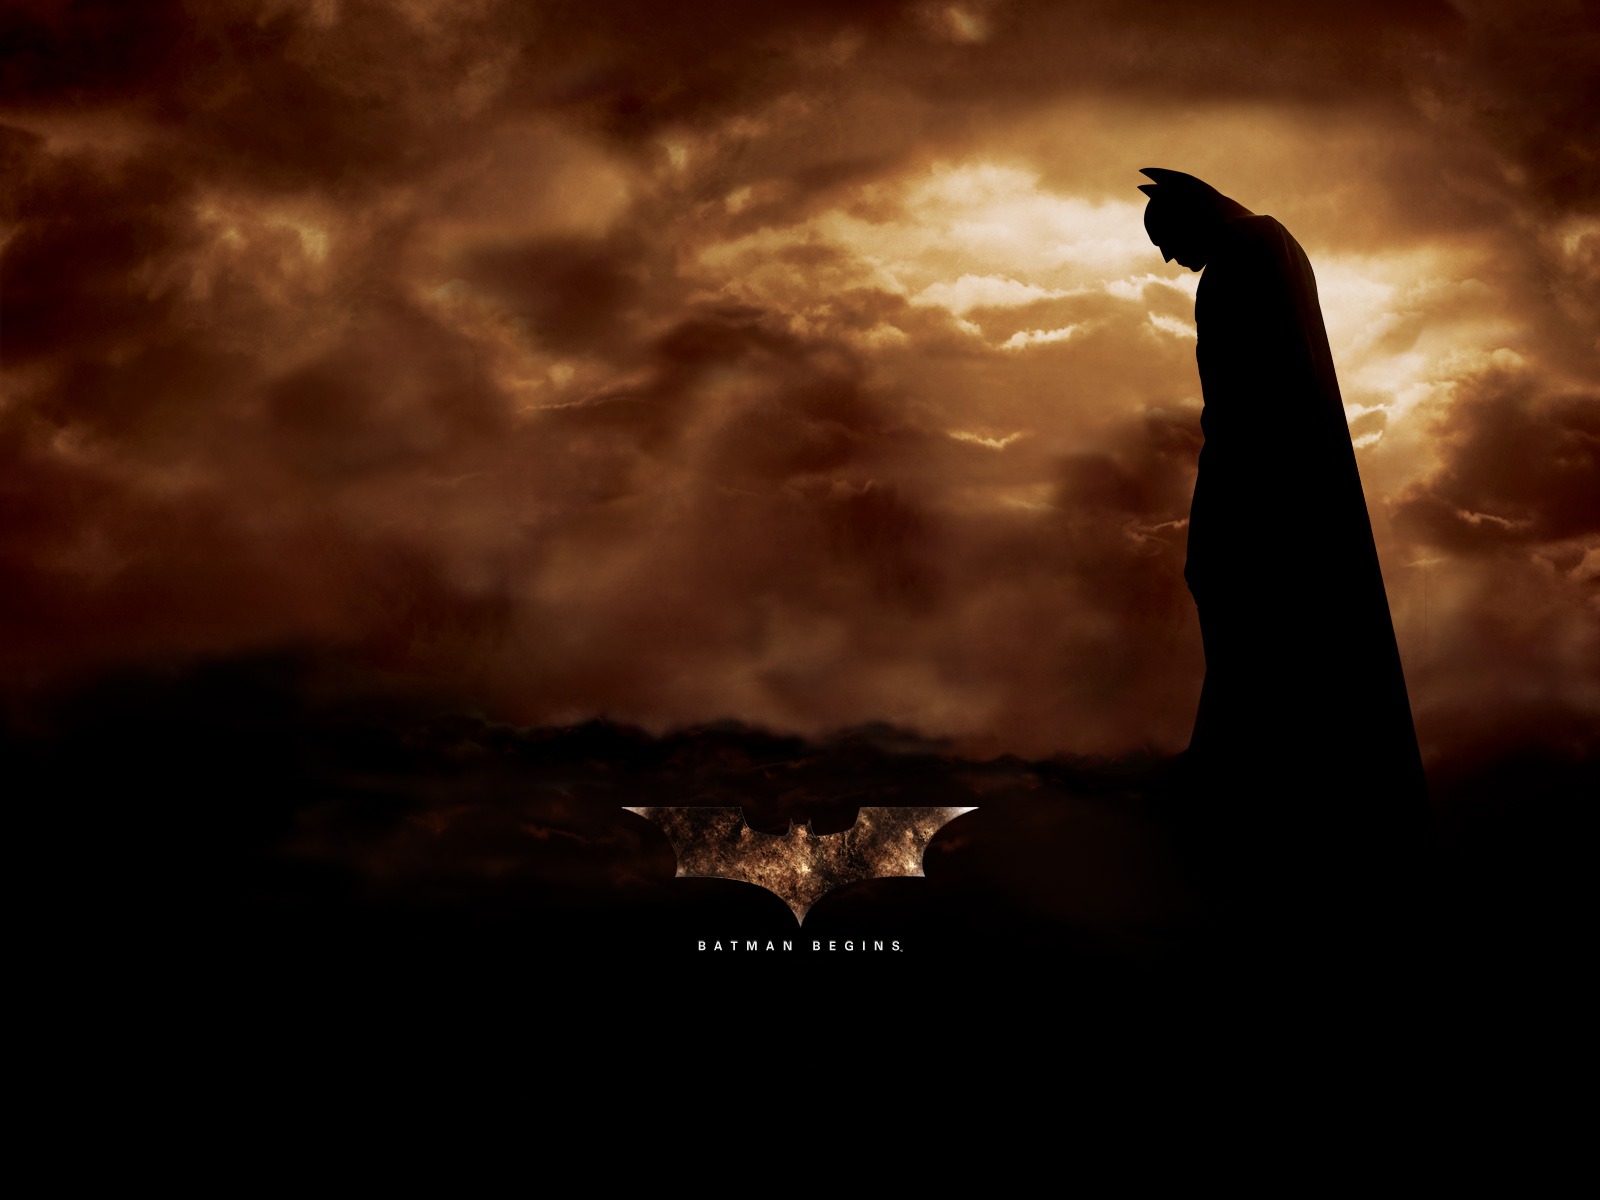 Batman_Begins_01_1600x1200.jpg